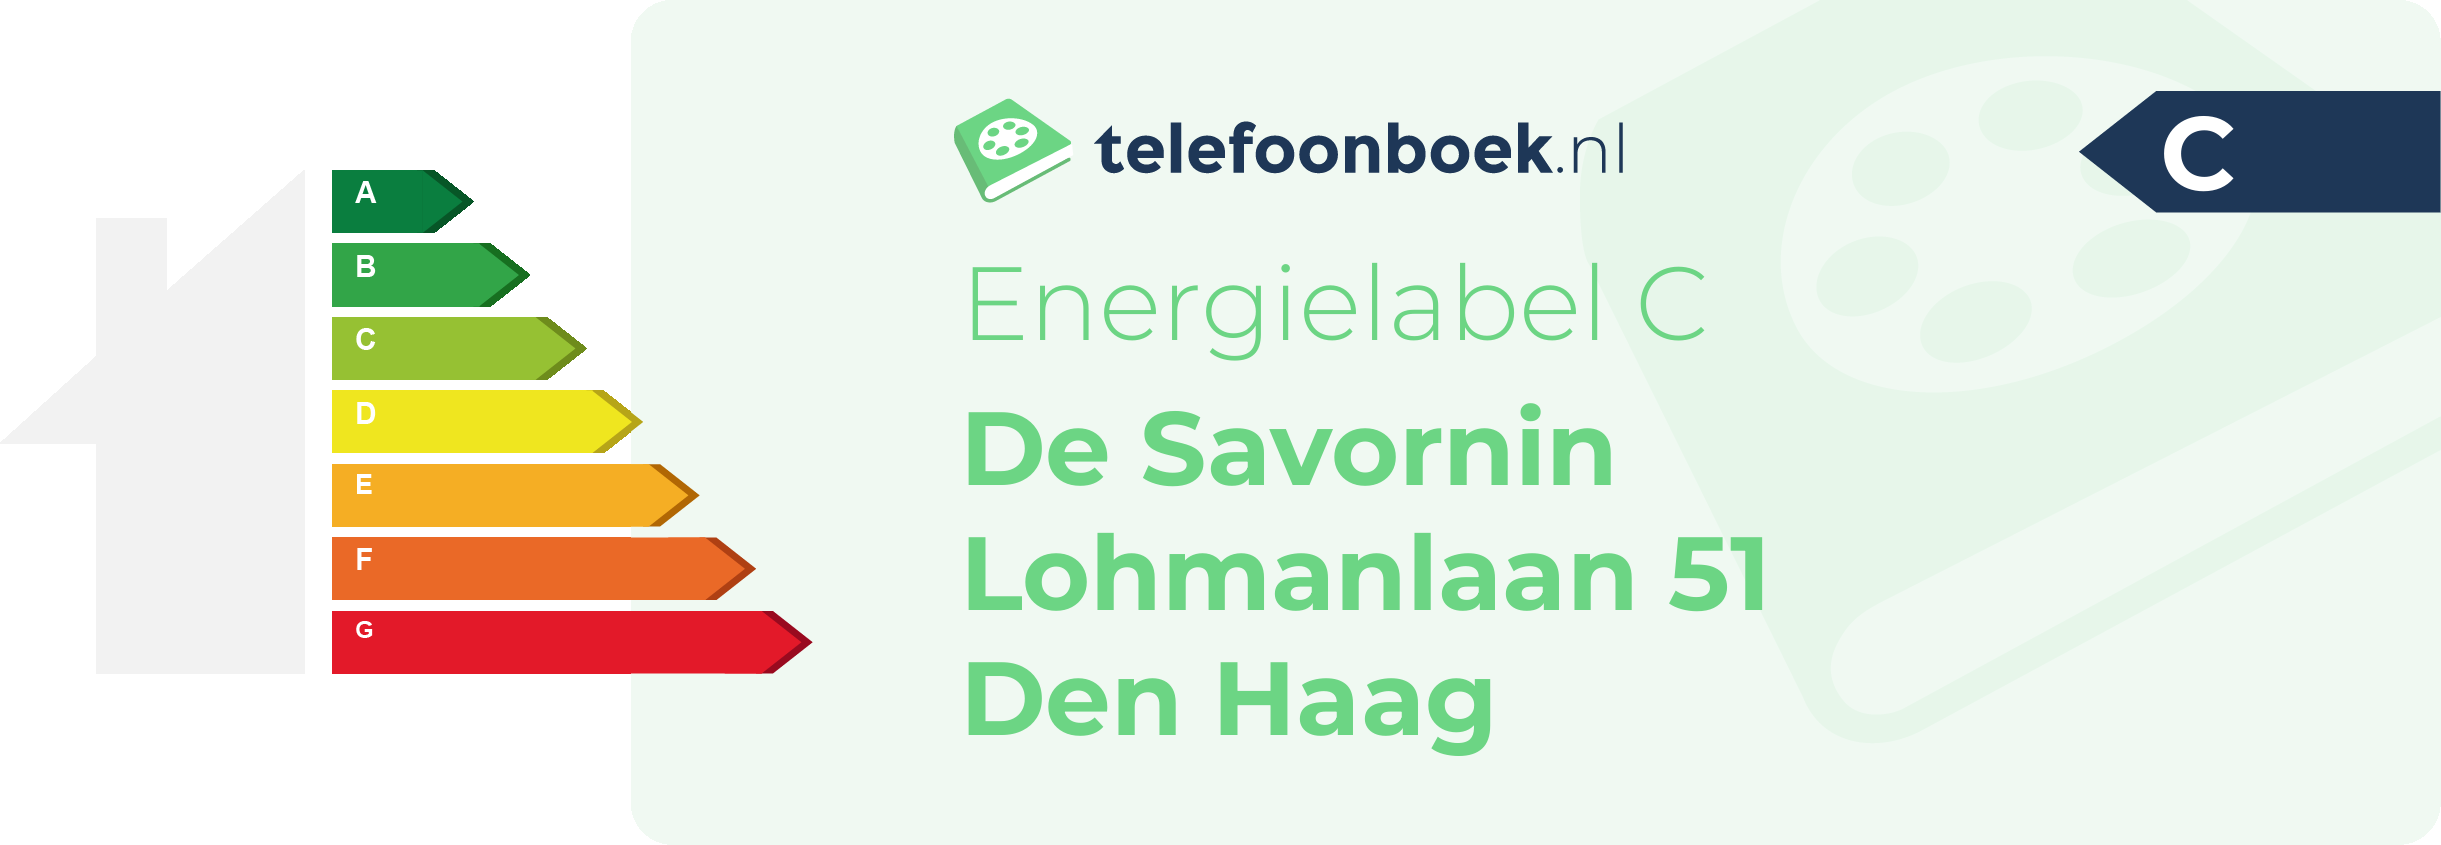 Energielabel De Savornin Lohmanlaan 51 Den Haag